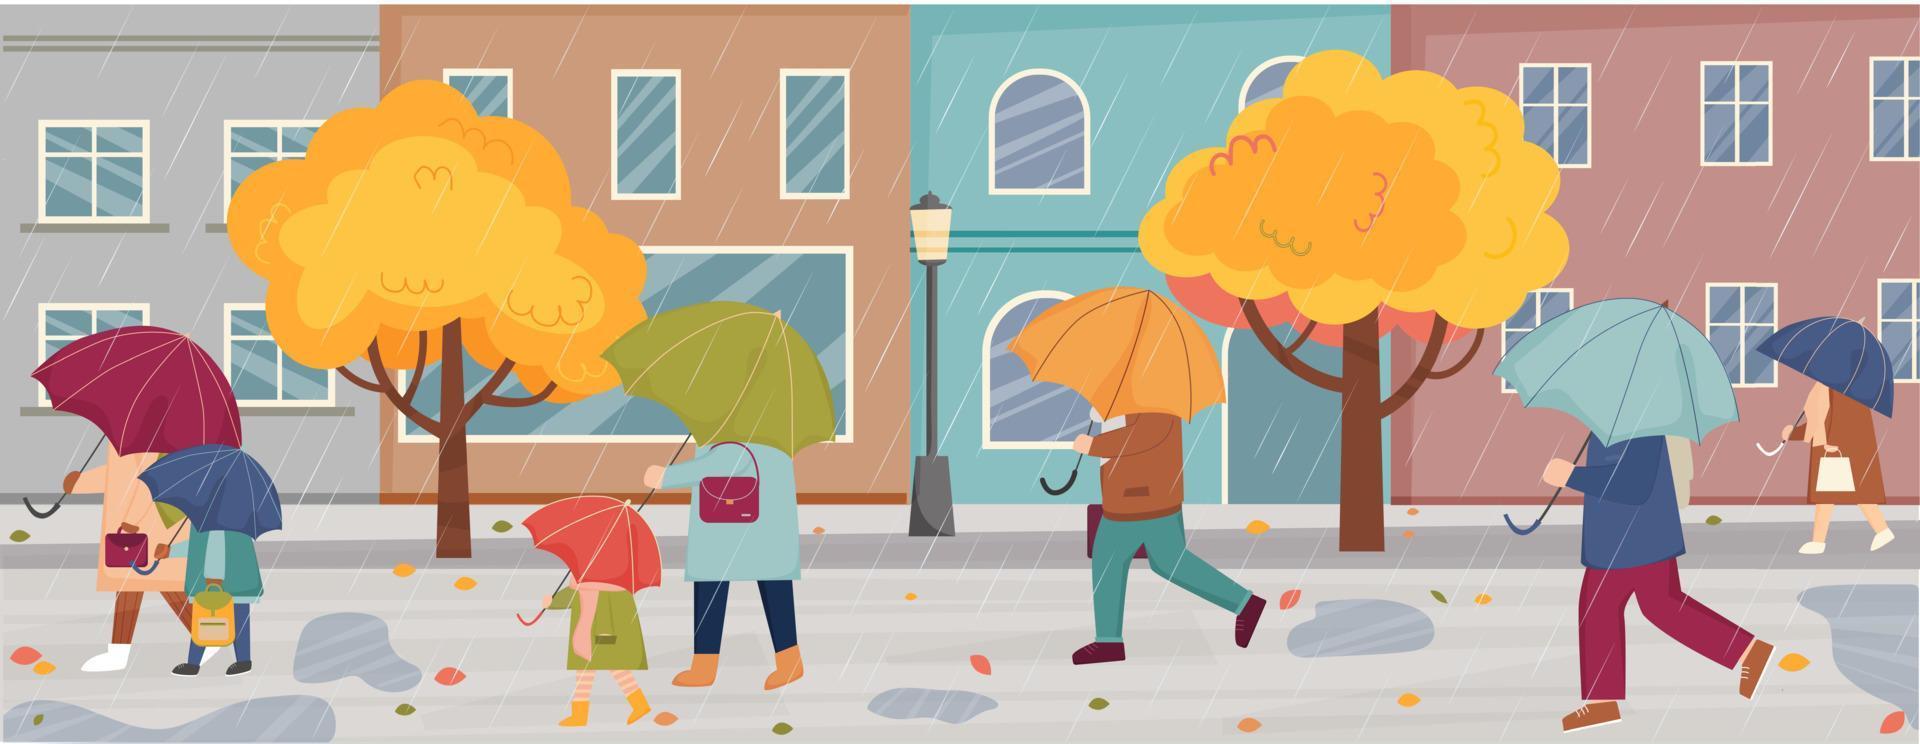 clima lluvioso de otoño en la ciudad. gente con paraguas camina bajo la lluvia. otoño en la ciudad. la gente camina bajo la lluvia en las calles de la ciudad con edificios. personas con sombrillas. vector